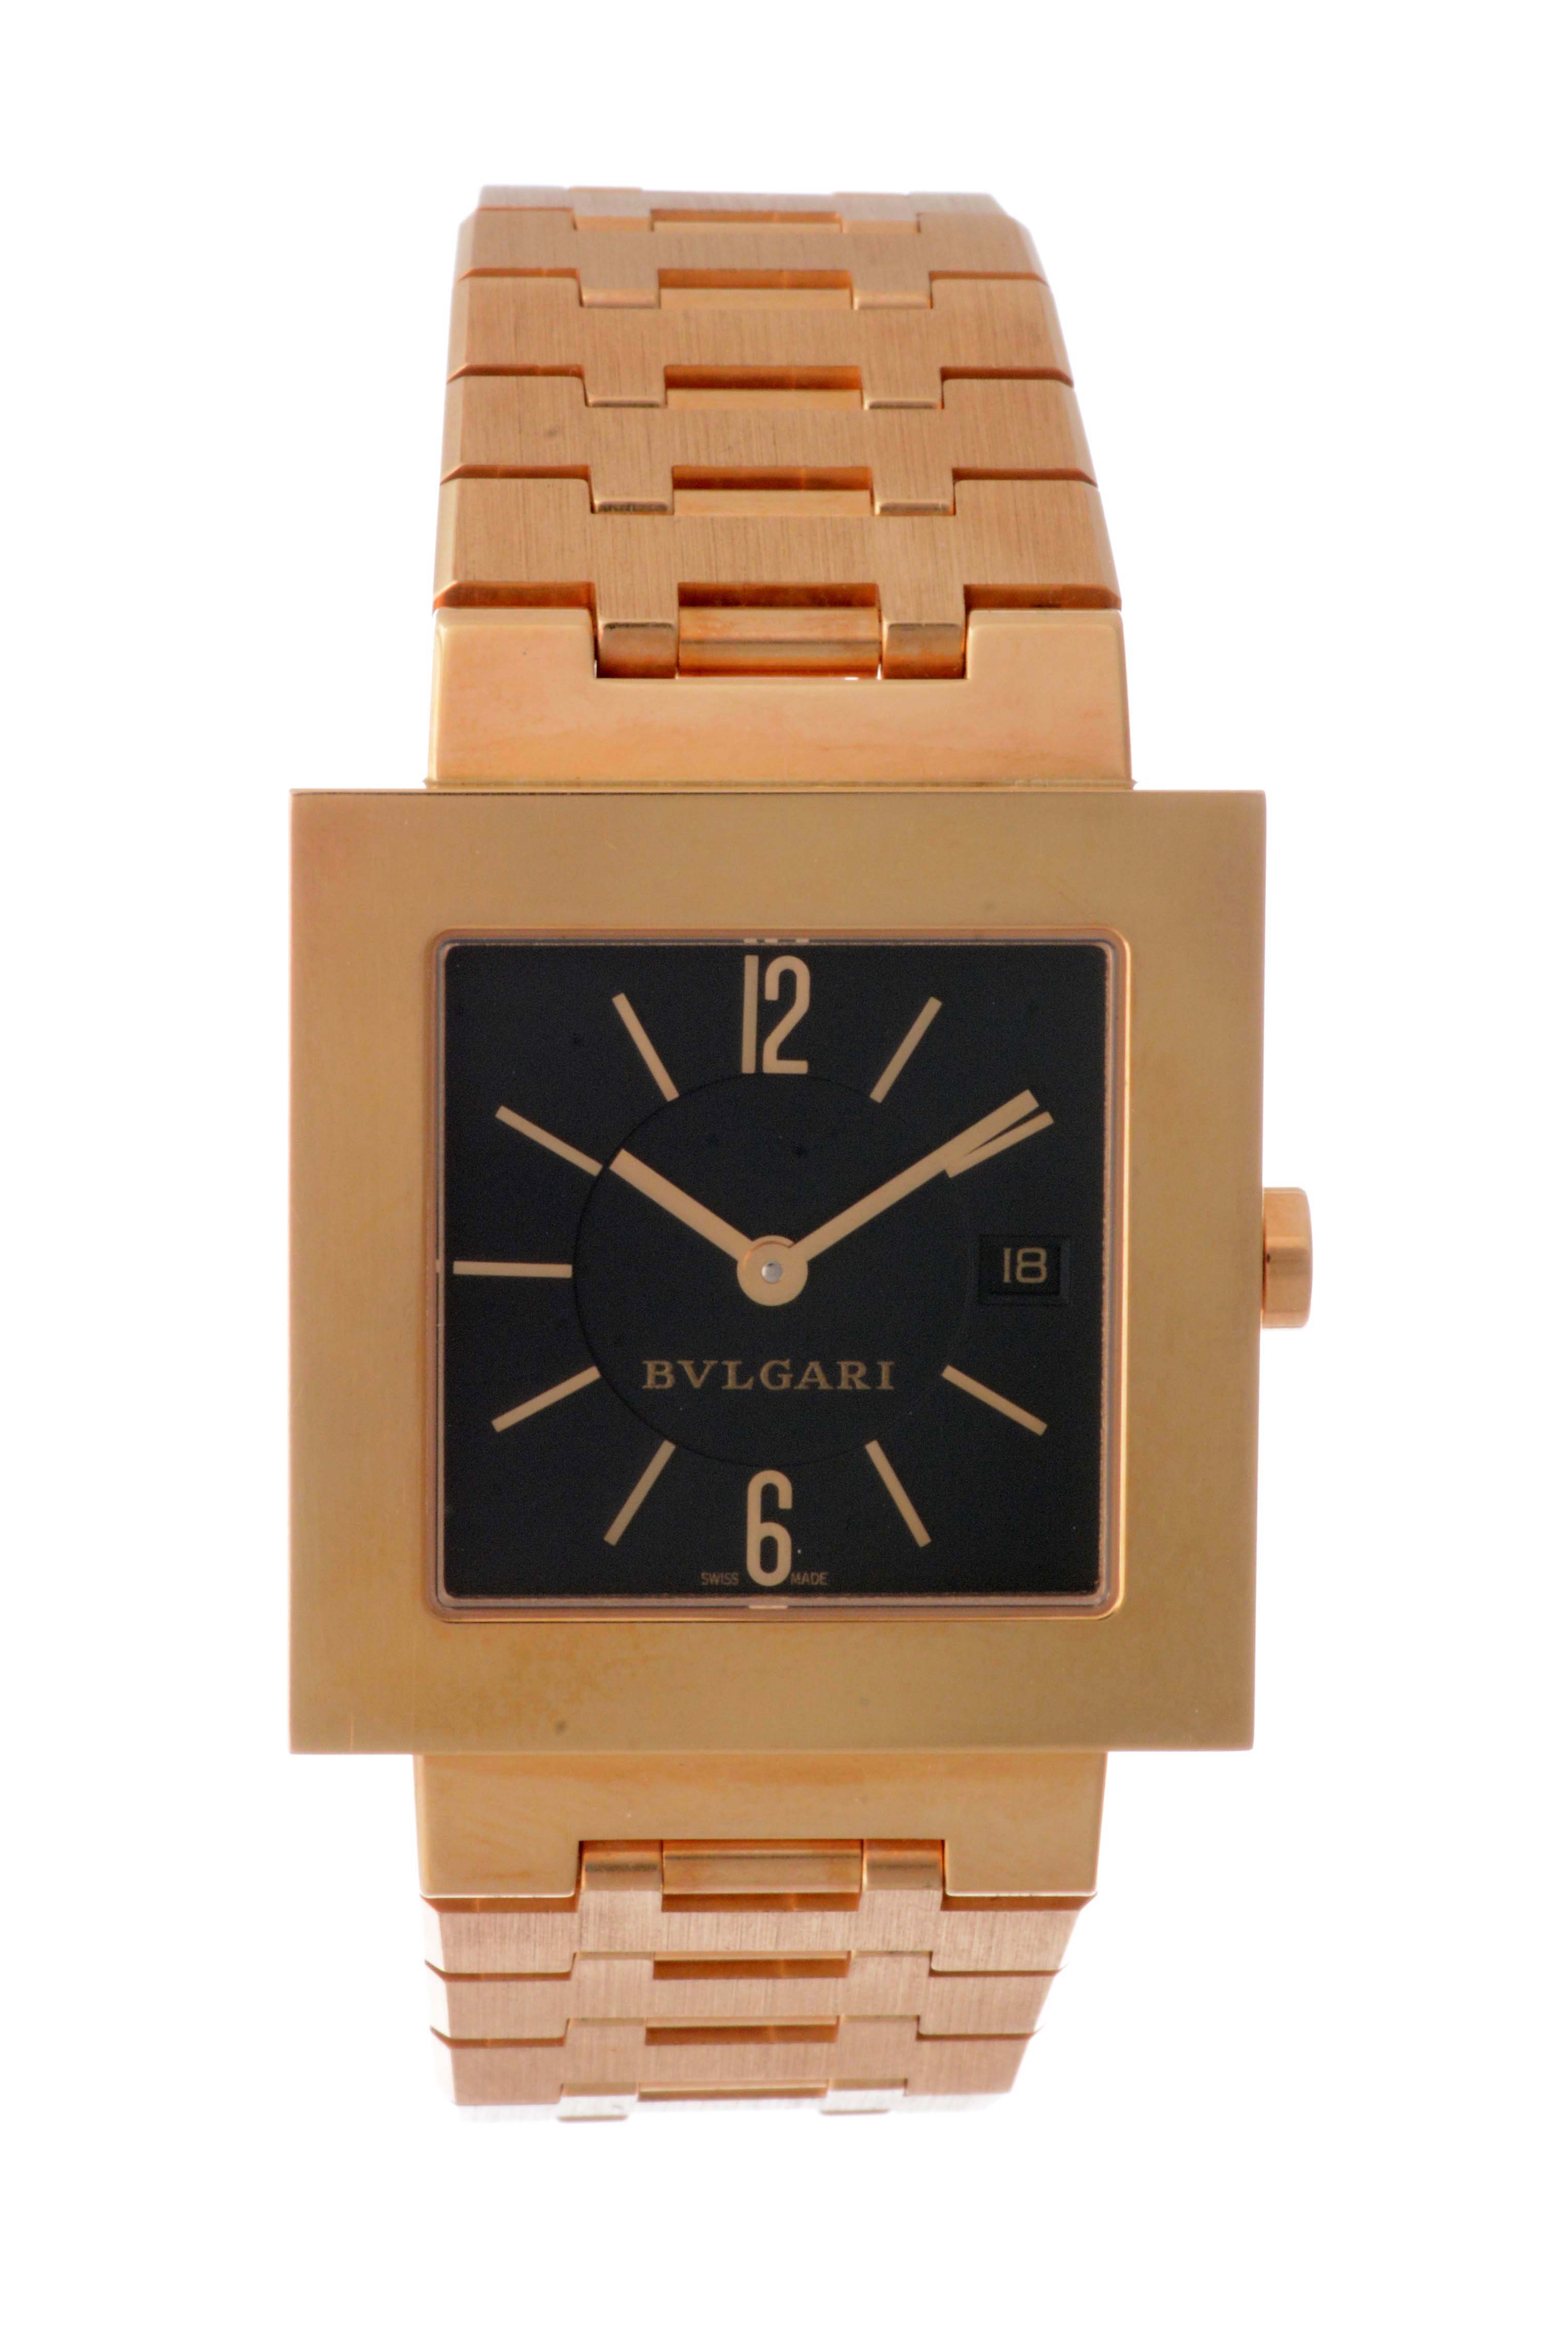 Bvlgari 18k Square Wristwatch, estimated at $10,000-20,000.